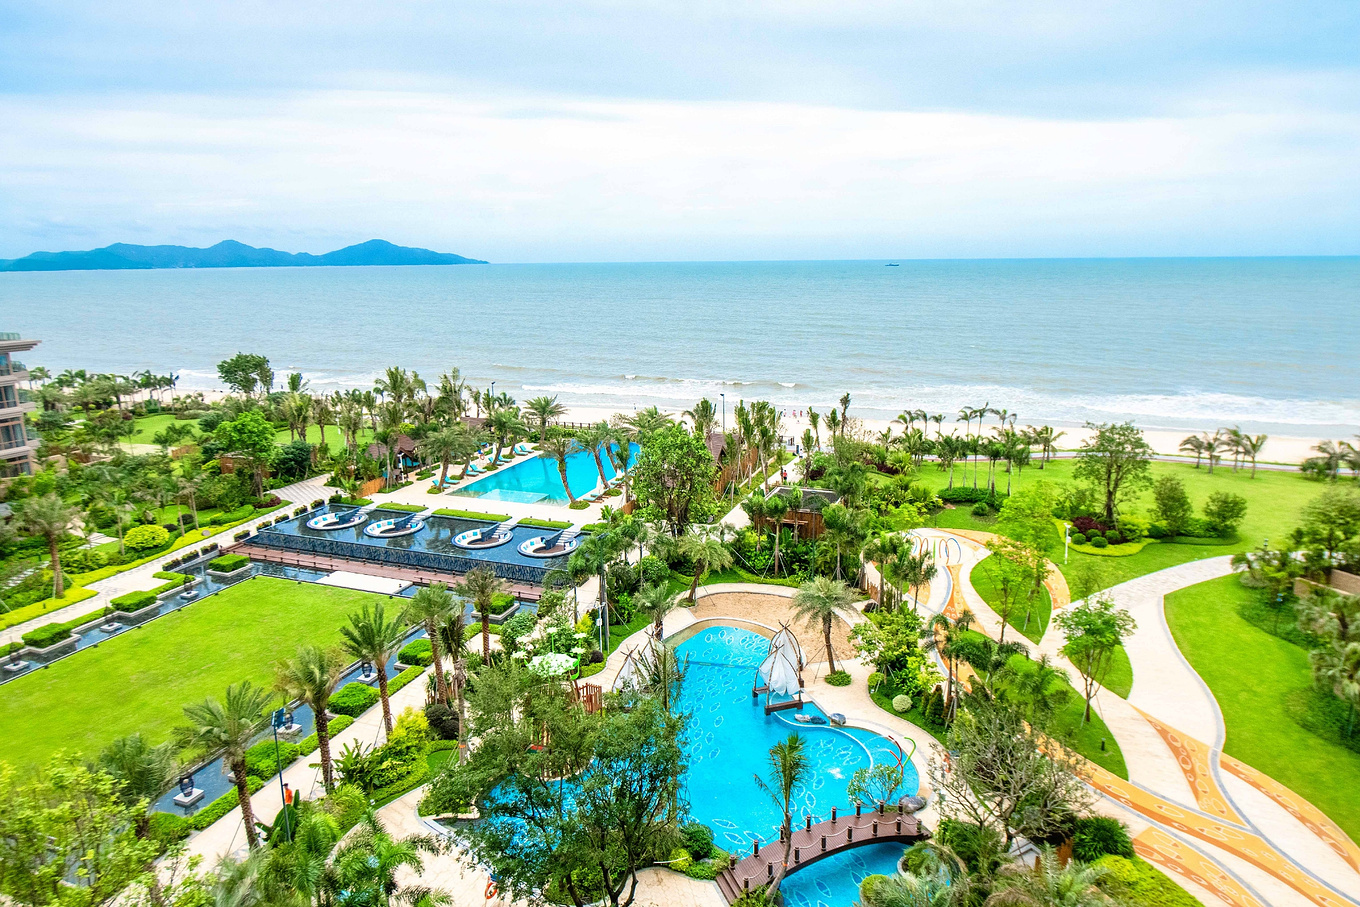 原创广东最奢华的酒店之一,风景堪比马尔代夫,一线海景超美!